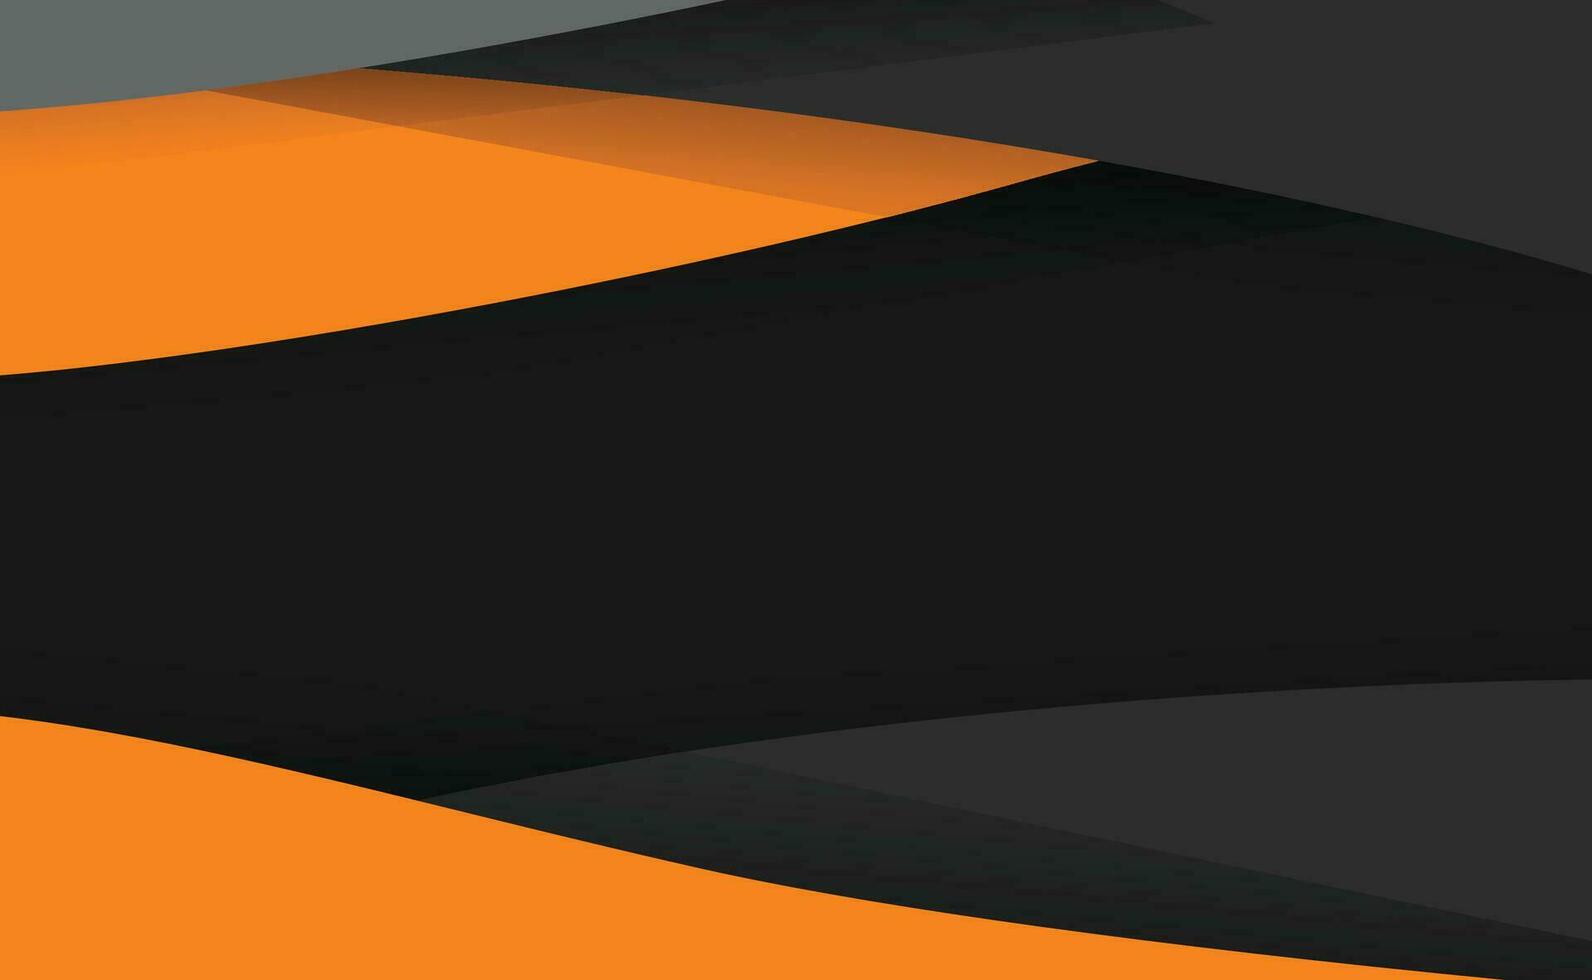 abstrakt gul orange och svart kontrast background.tech trogen företags- design. geometrisk illustration för broschyrer, flygblad, webb grafisk design. vektor illustration